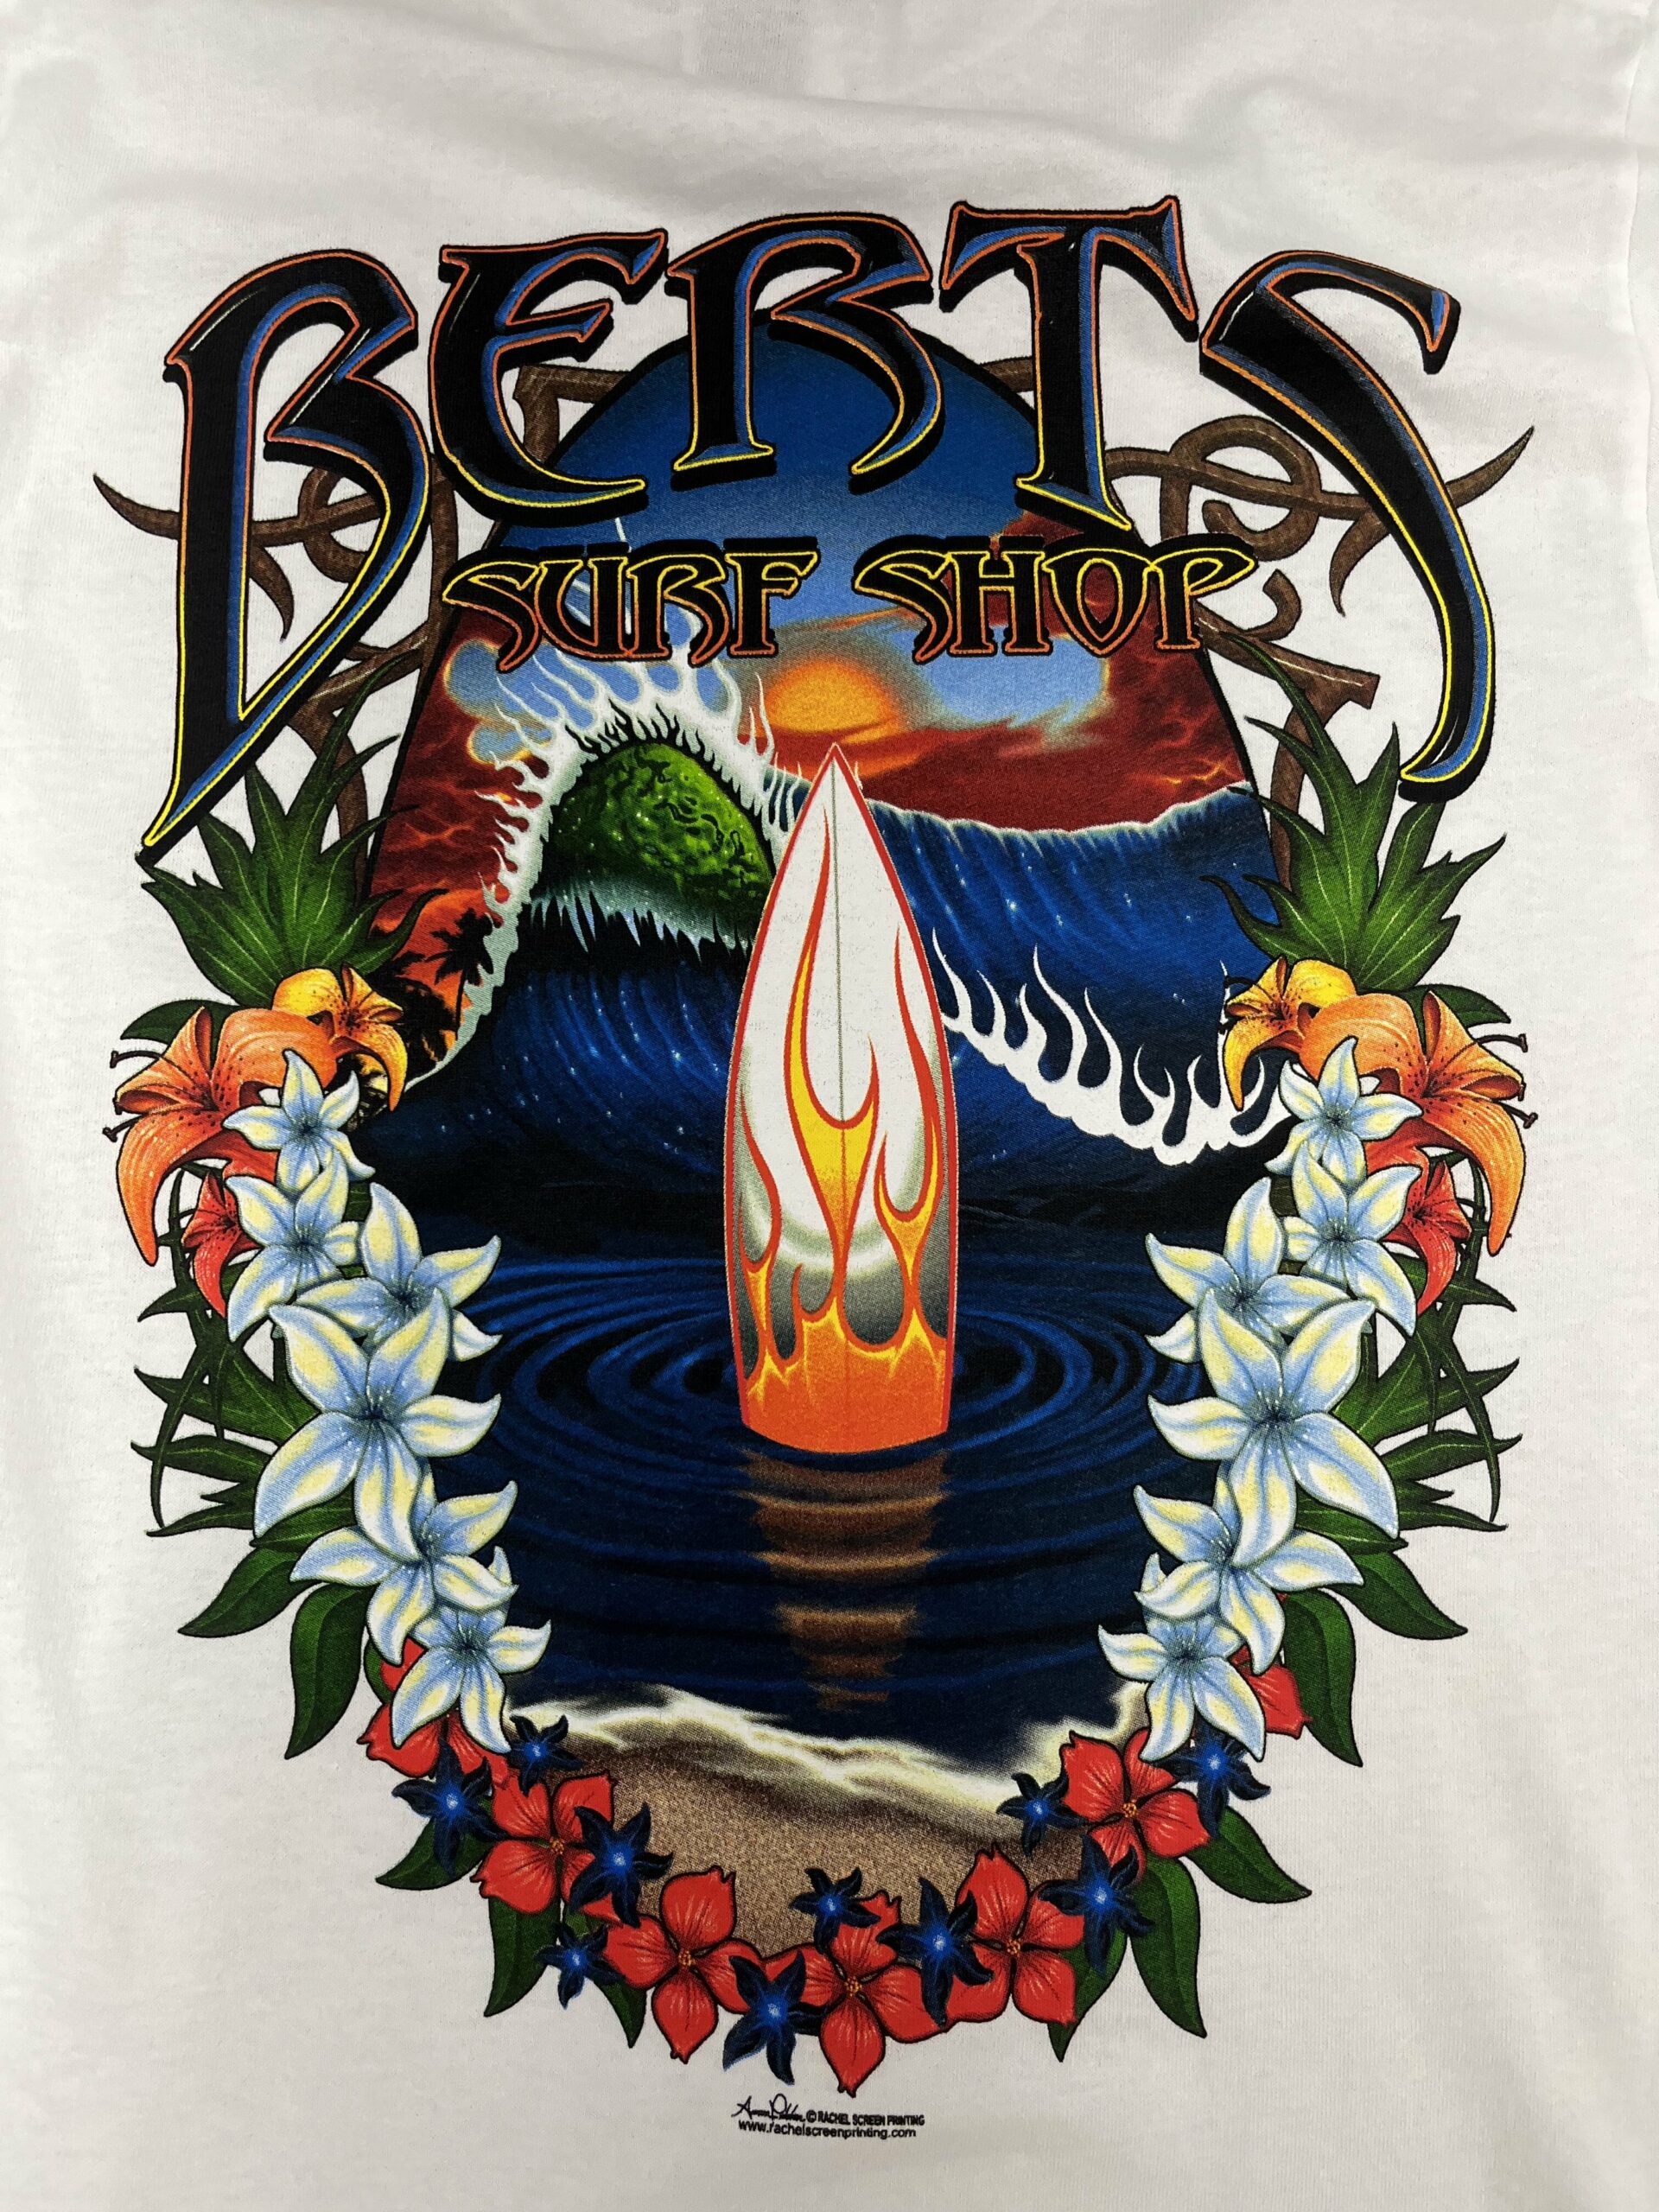 Bert's Surf Shop - Bert's Tee Shirt Flame Surfboard